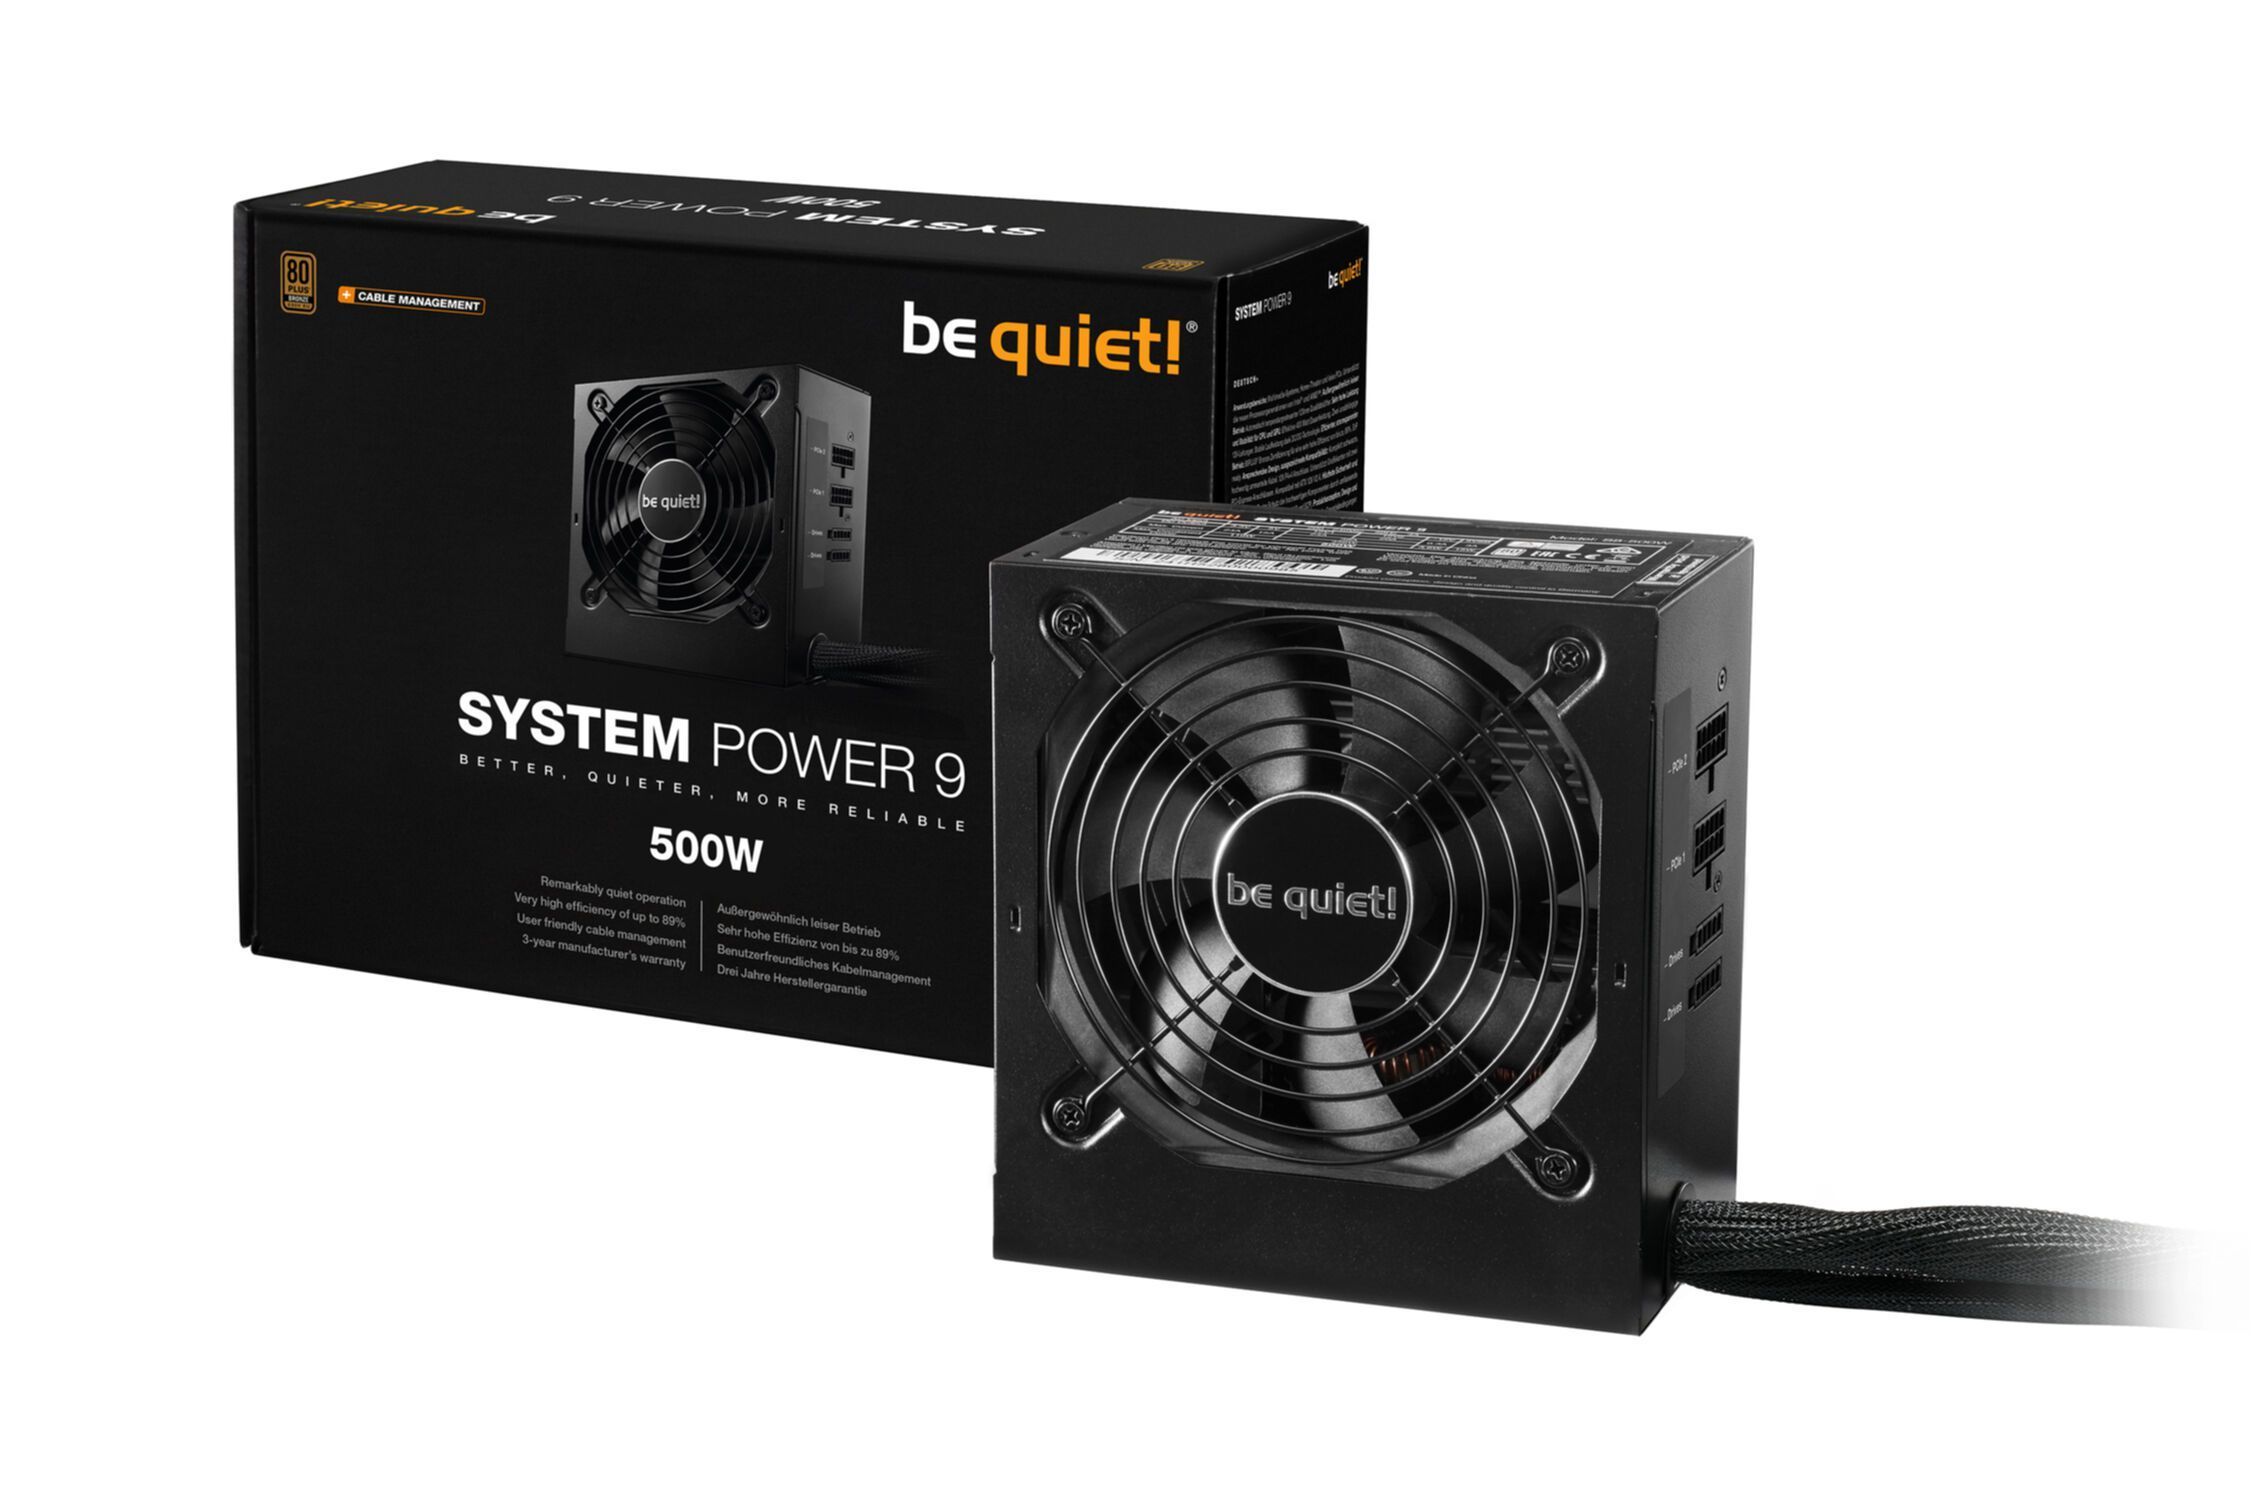 QUIET! Netzteil , Power BE 500W PC CM 9 System 500 Watt